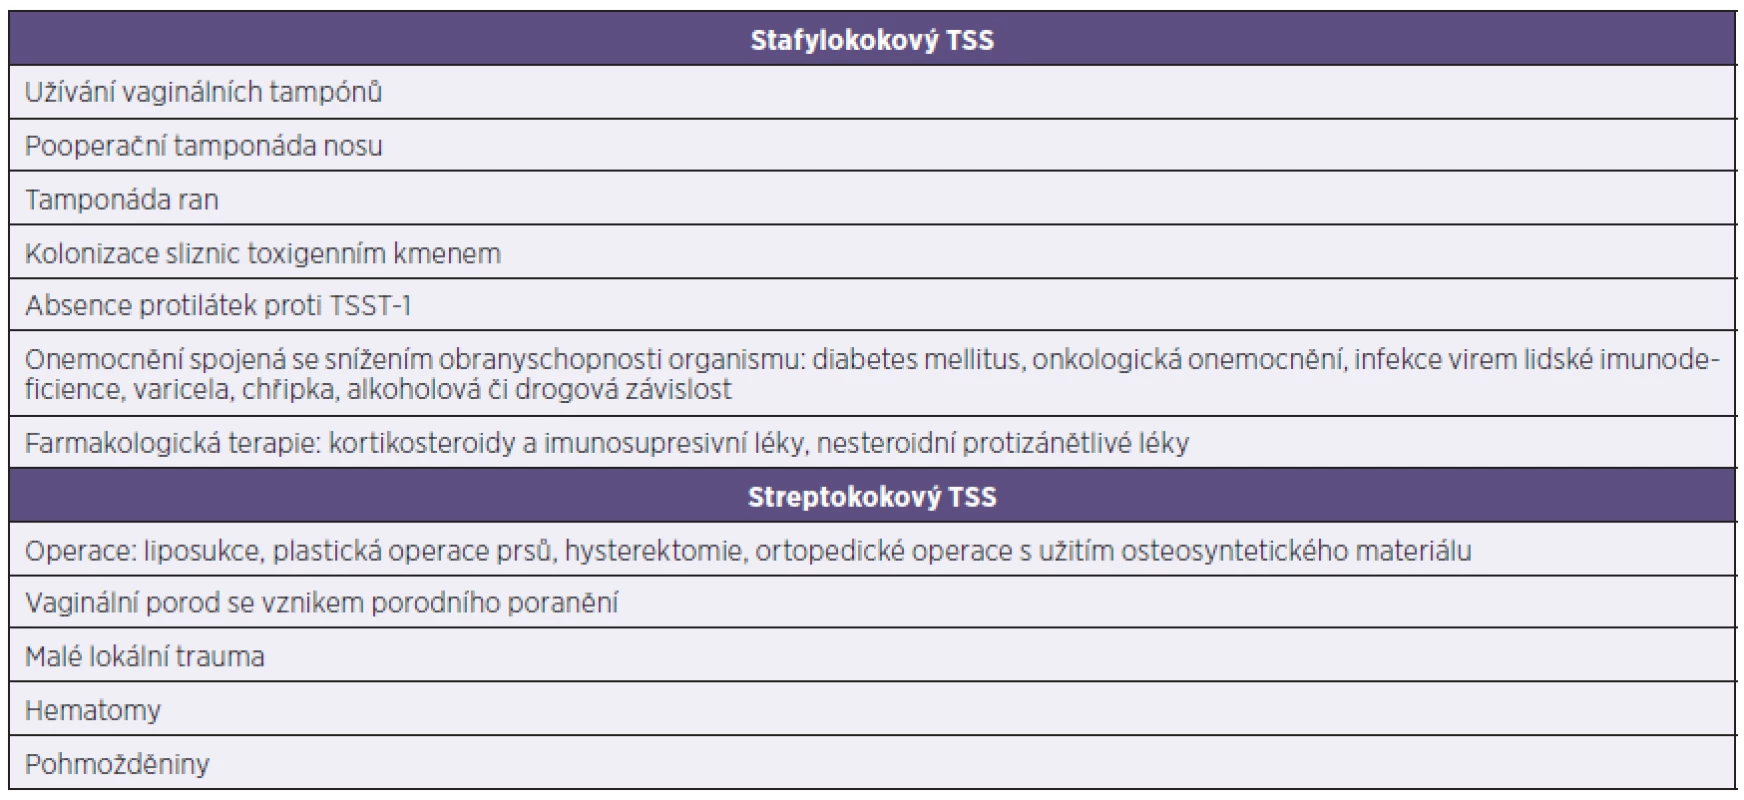 Souhrn rizikových faktorů vzniku TSS
Table 4. Summary of risk factors for toxic shock syndrome